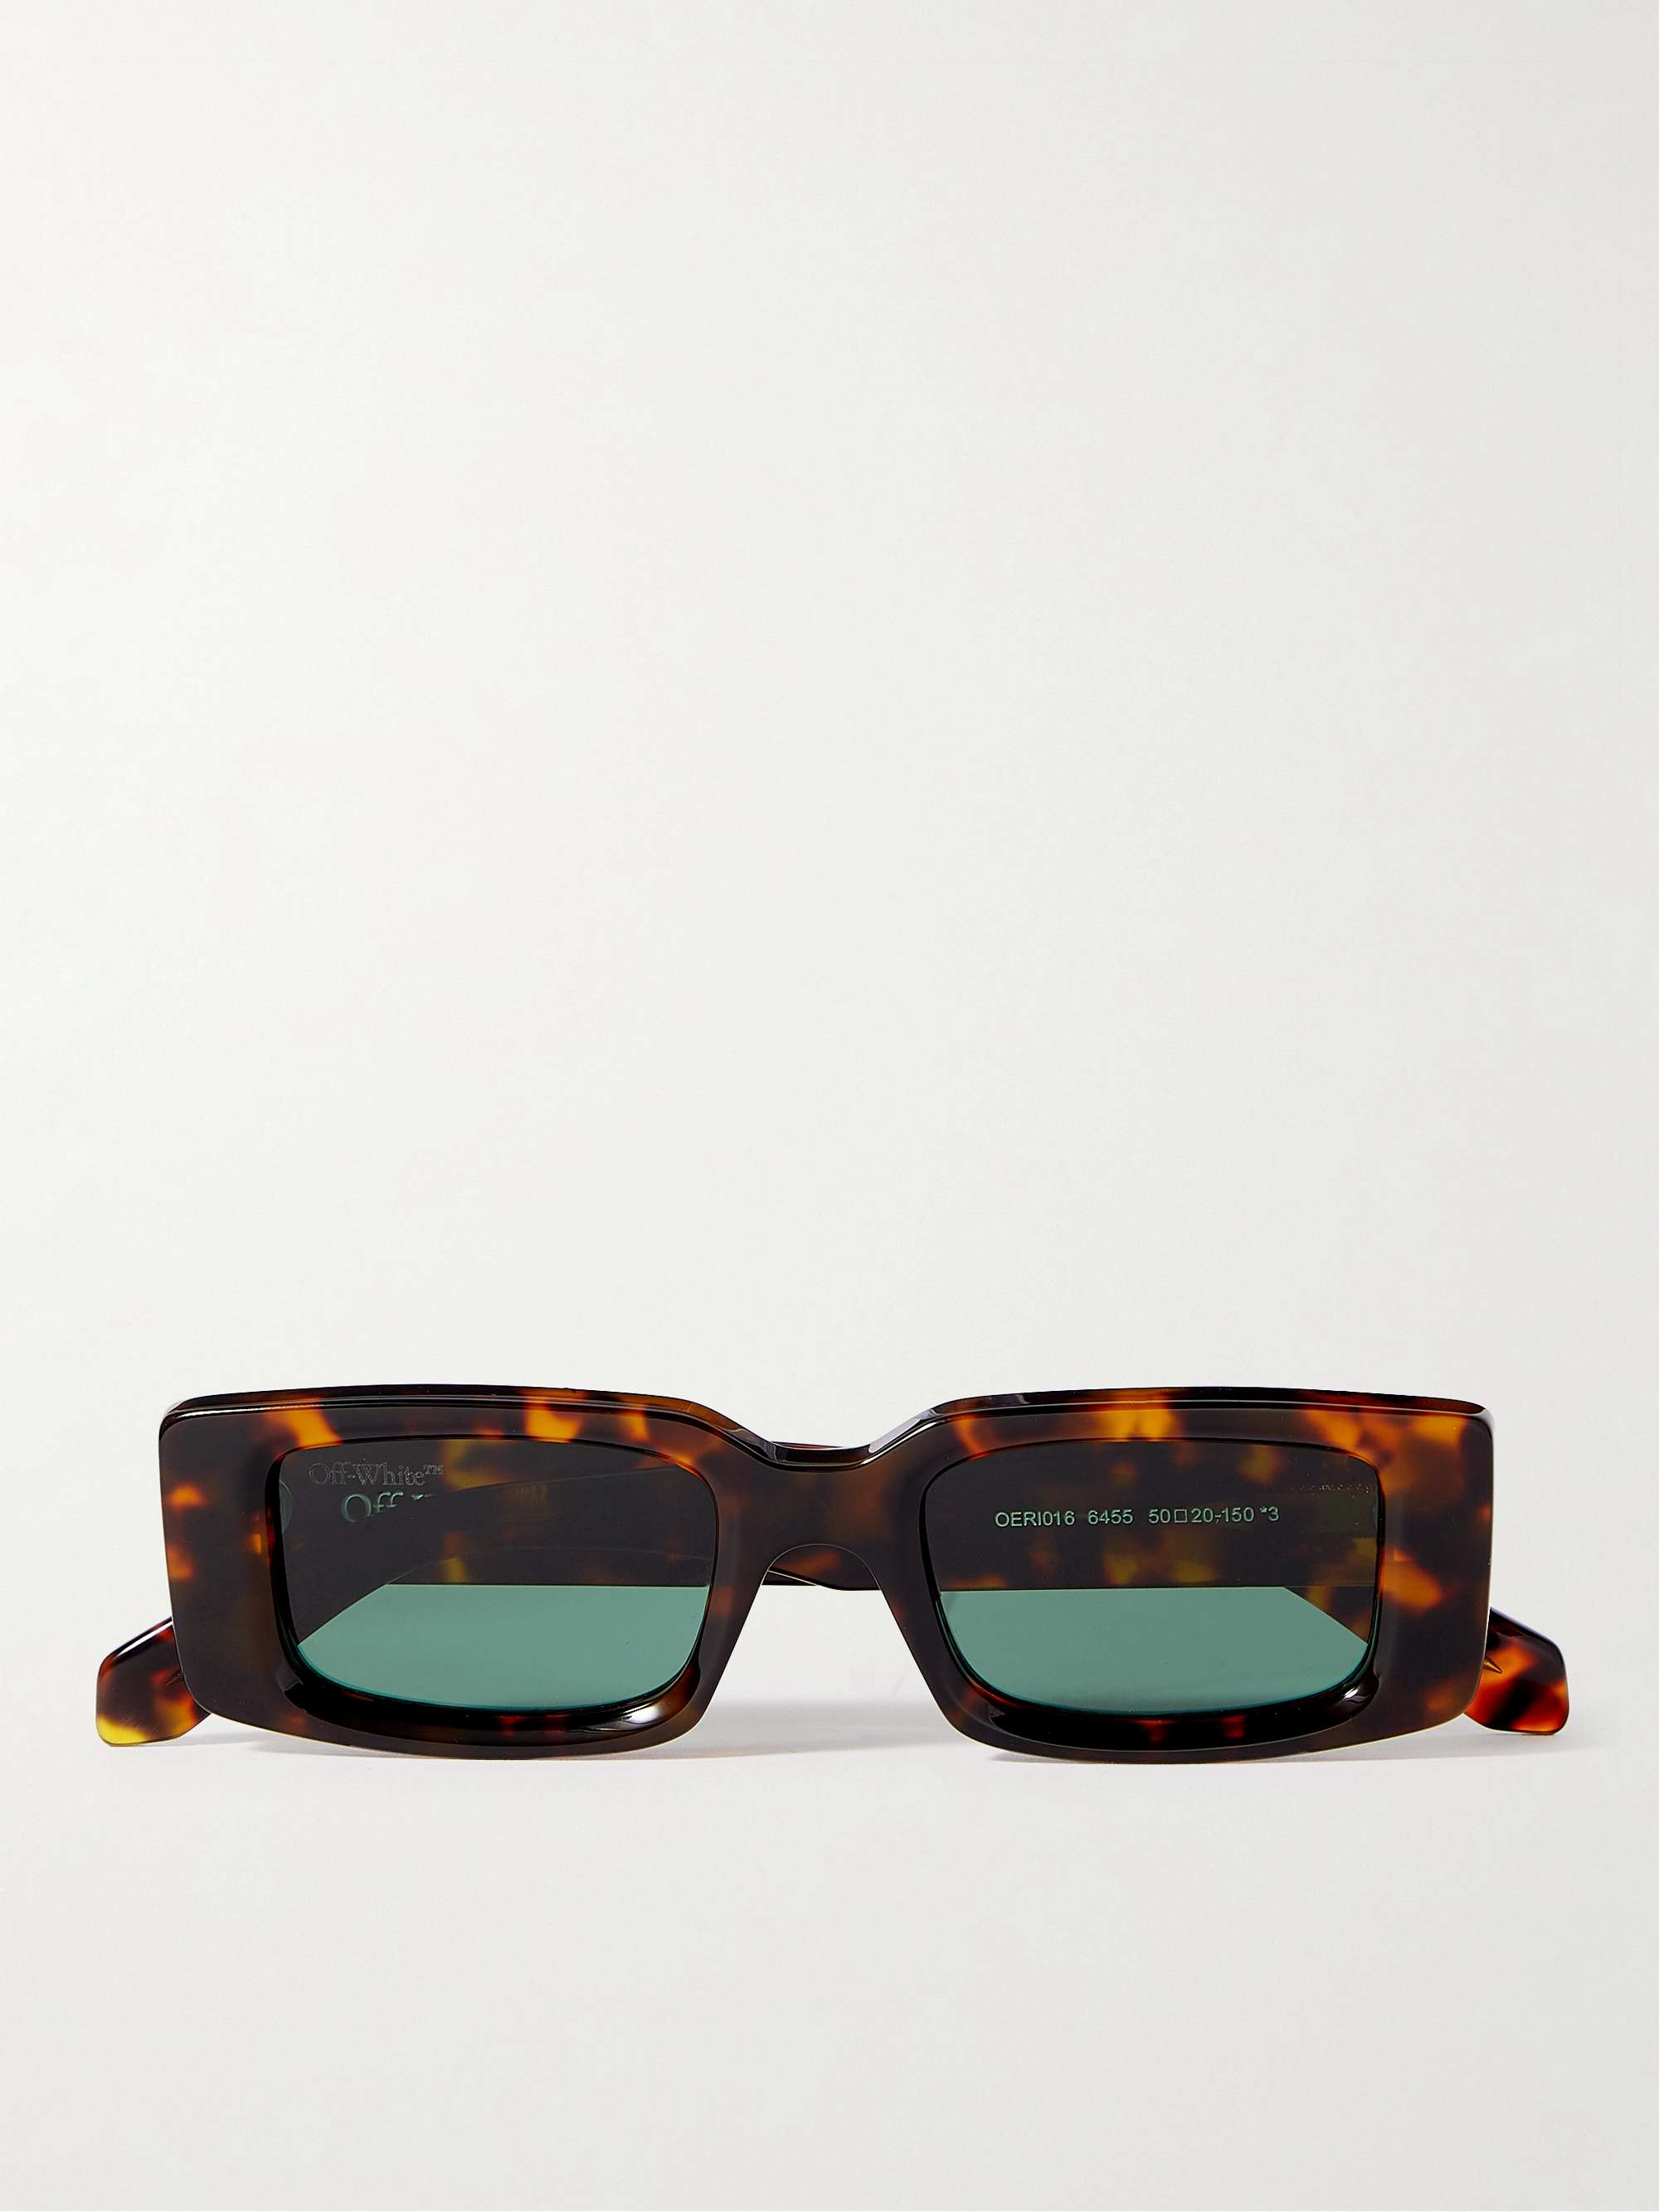 Солнцезащитные очки Arthur в квадратной оправе черепаховой расцветки из ацетата OFF-WHITE, черепаховый